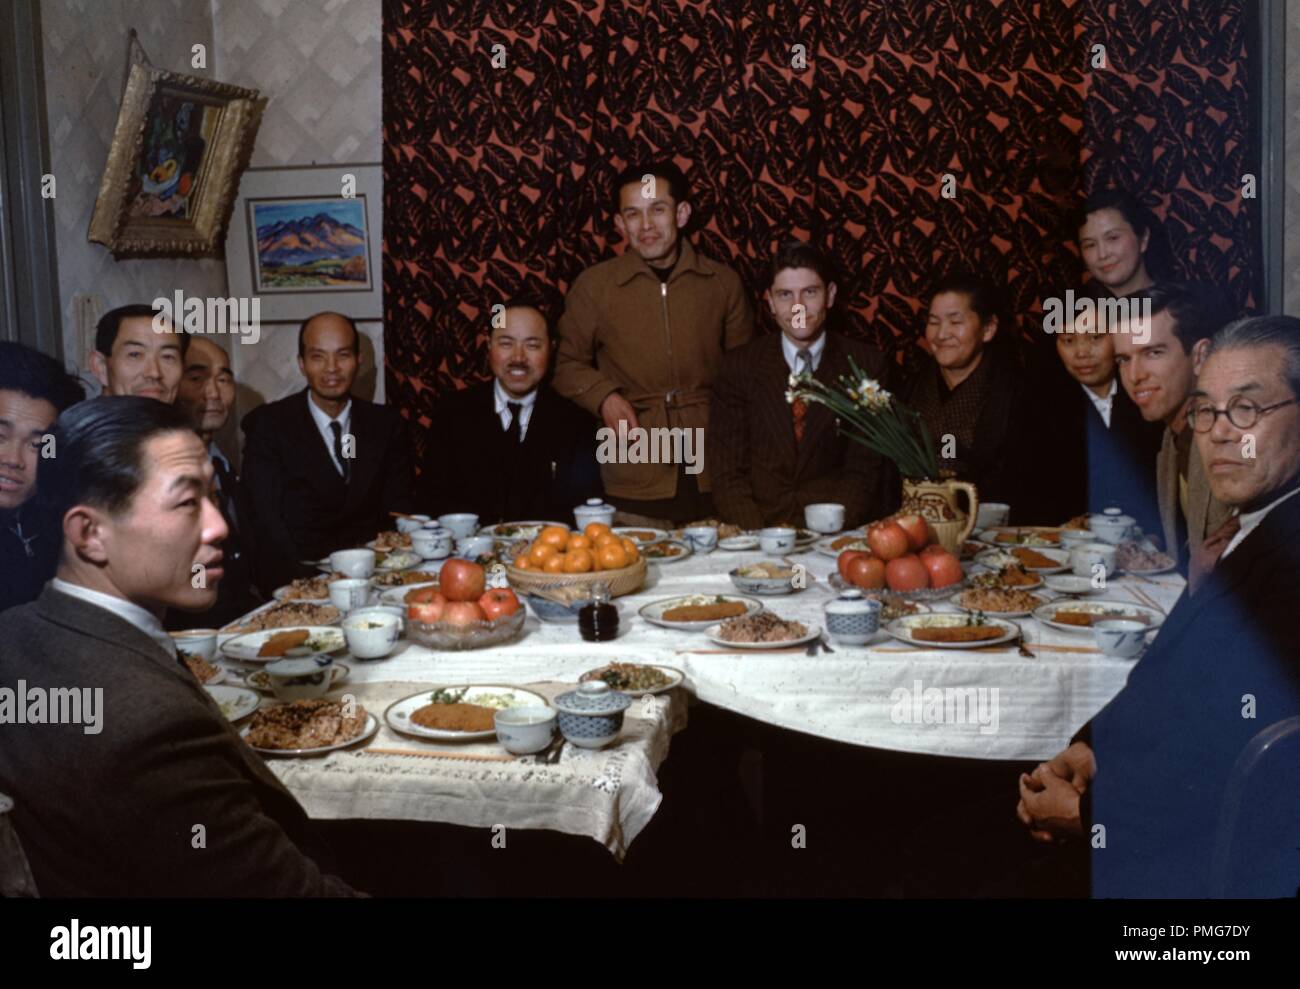 Eine große Gruppe von Menschen, einschließlich der Kaukasischen christliche Missionare und Japanische Kongregationsmitglieder, sitzen an einem Tisch in einem kleinen Zimmer, üppiges Essen mit sowohl westliche als auch japanische Elemente, einschließlich Nudeln, Äpfel, und Schalen aus Sojasauce, Japan, 1955. () Stockfoto